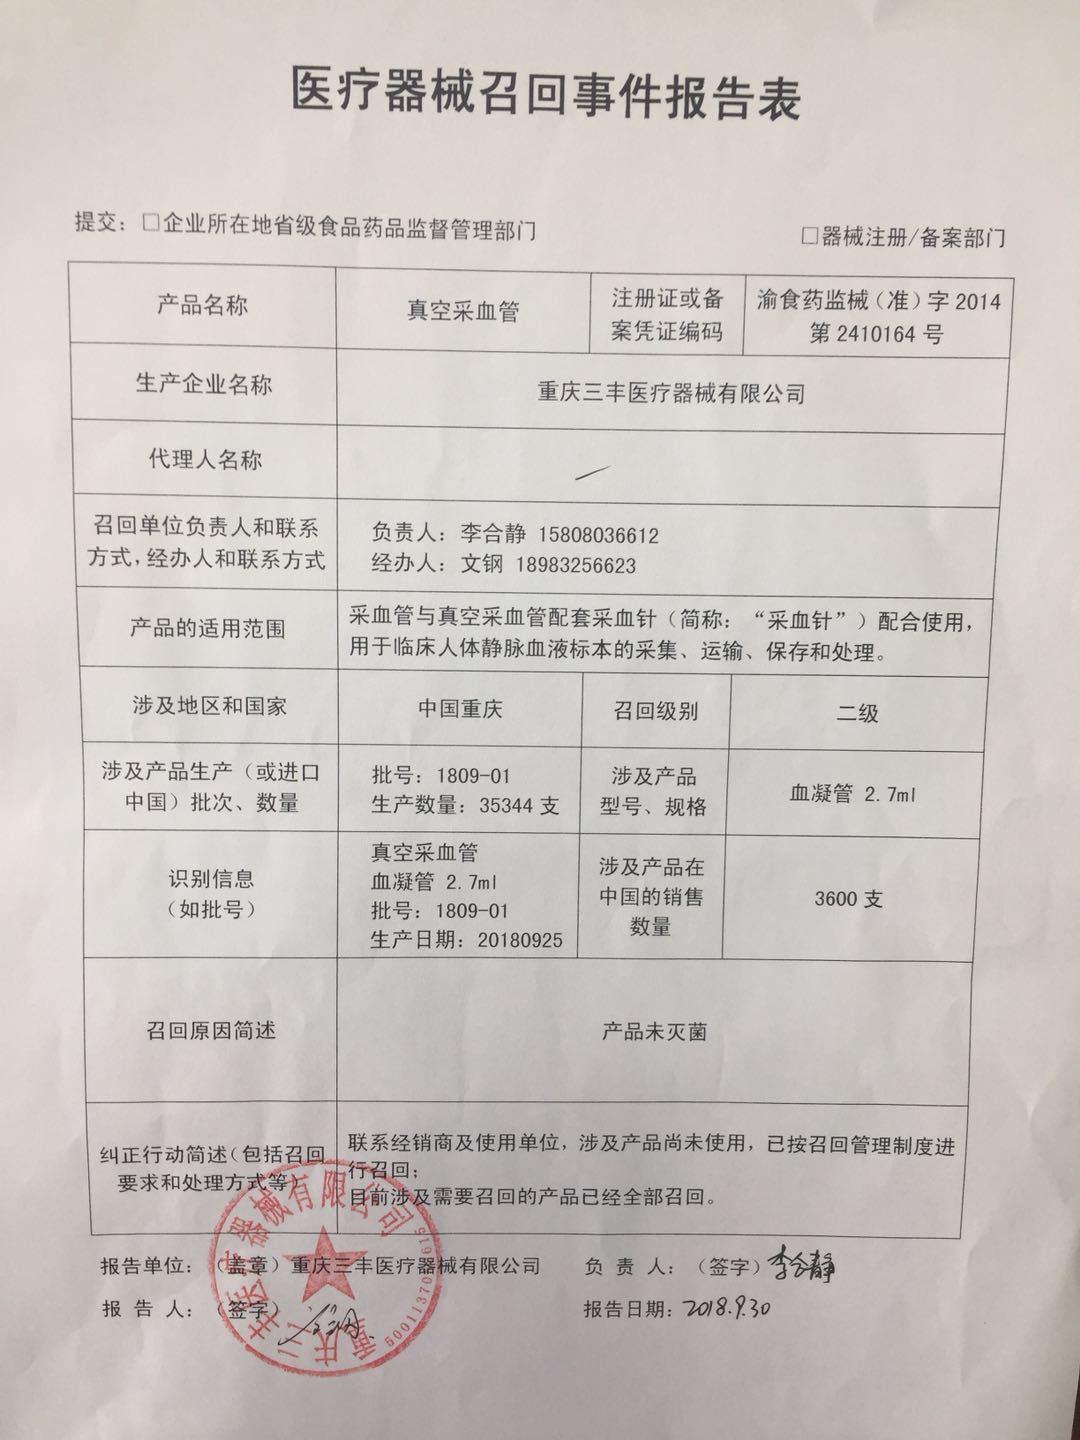 重庆三丰医疗器械公司召回3600支真空采血管 因产品未灭菌